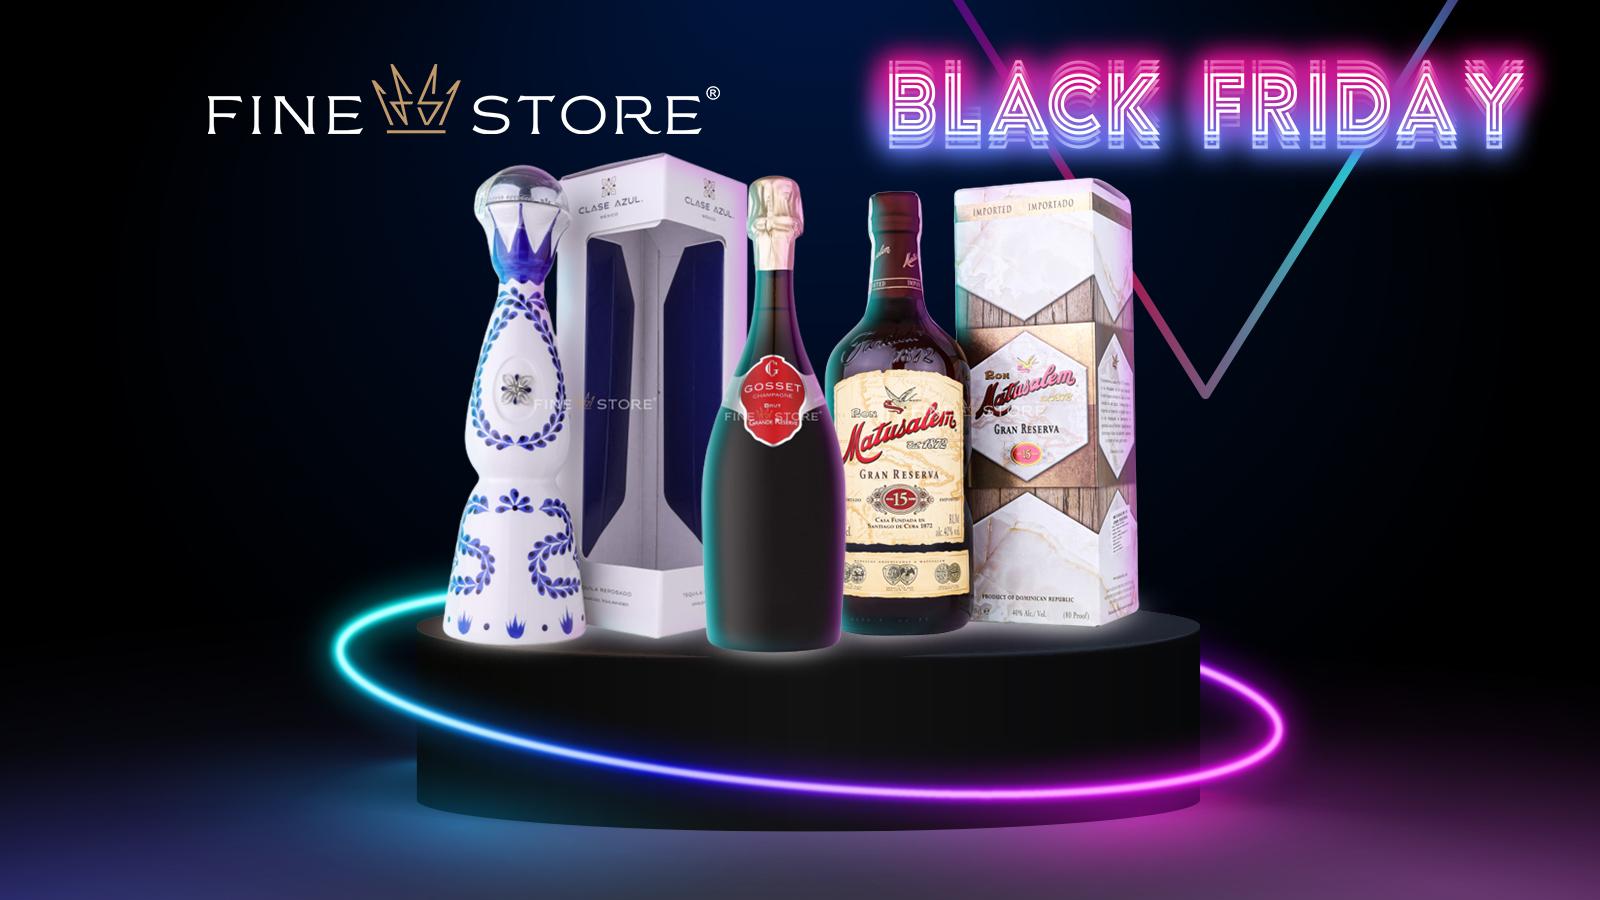 (P) Profită de Black Friday la FineStore! Găsești tot ce poftești, la prețuri speciale, pentru un Crăciun cu adevărat memorabil